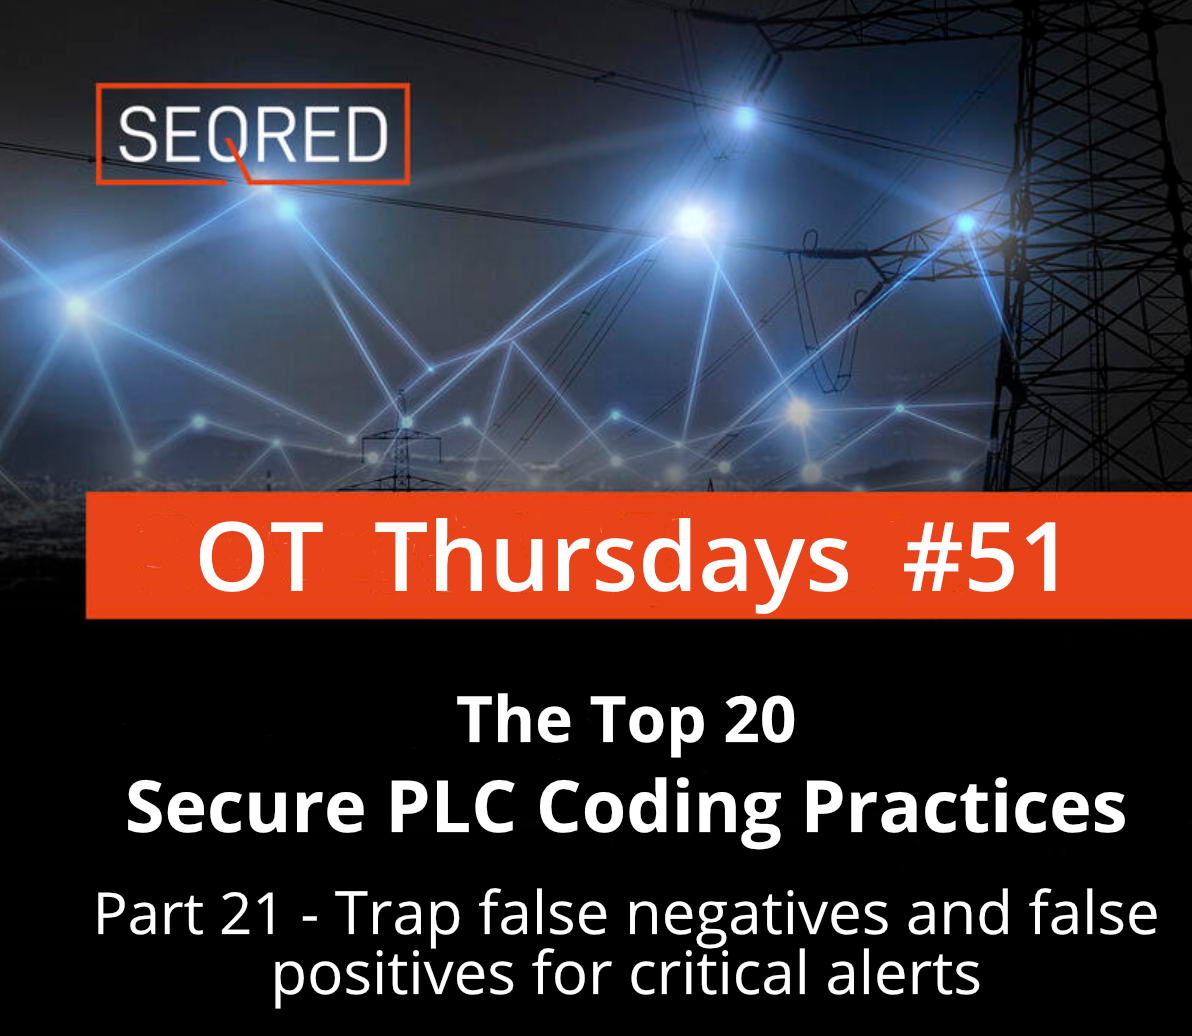 Secure PLC Coding Practices. Trap false negatives and false positives for critical alerts